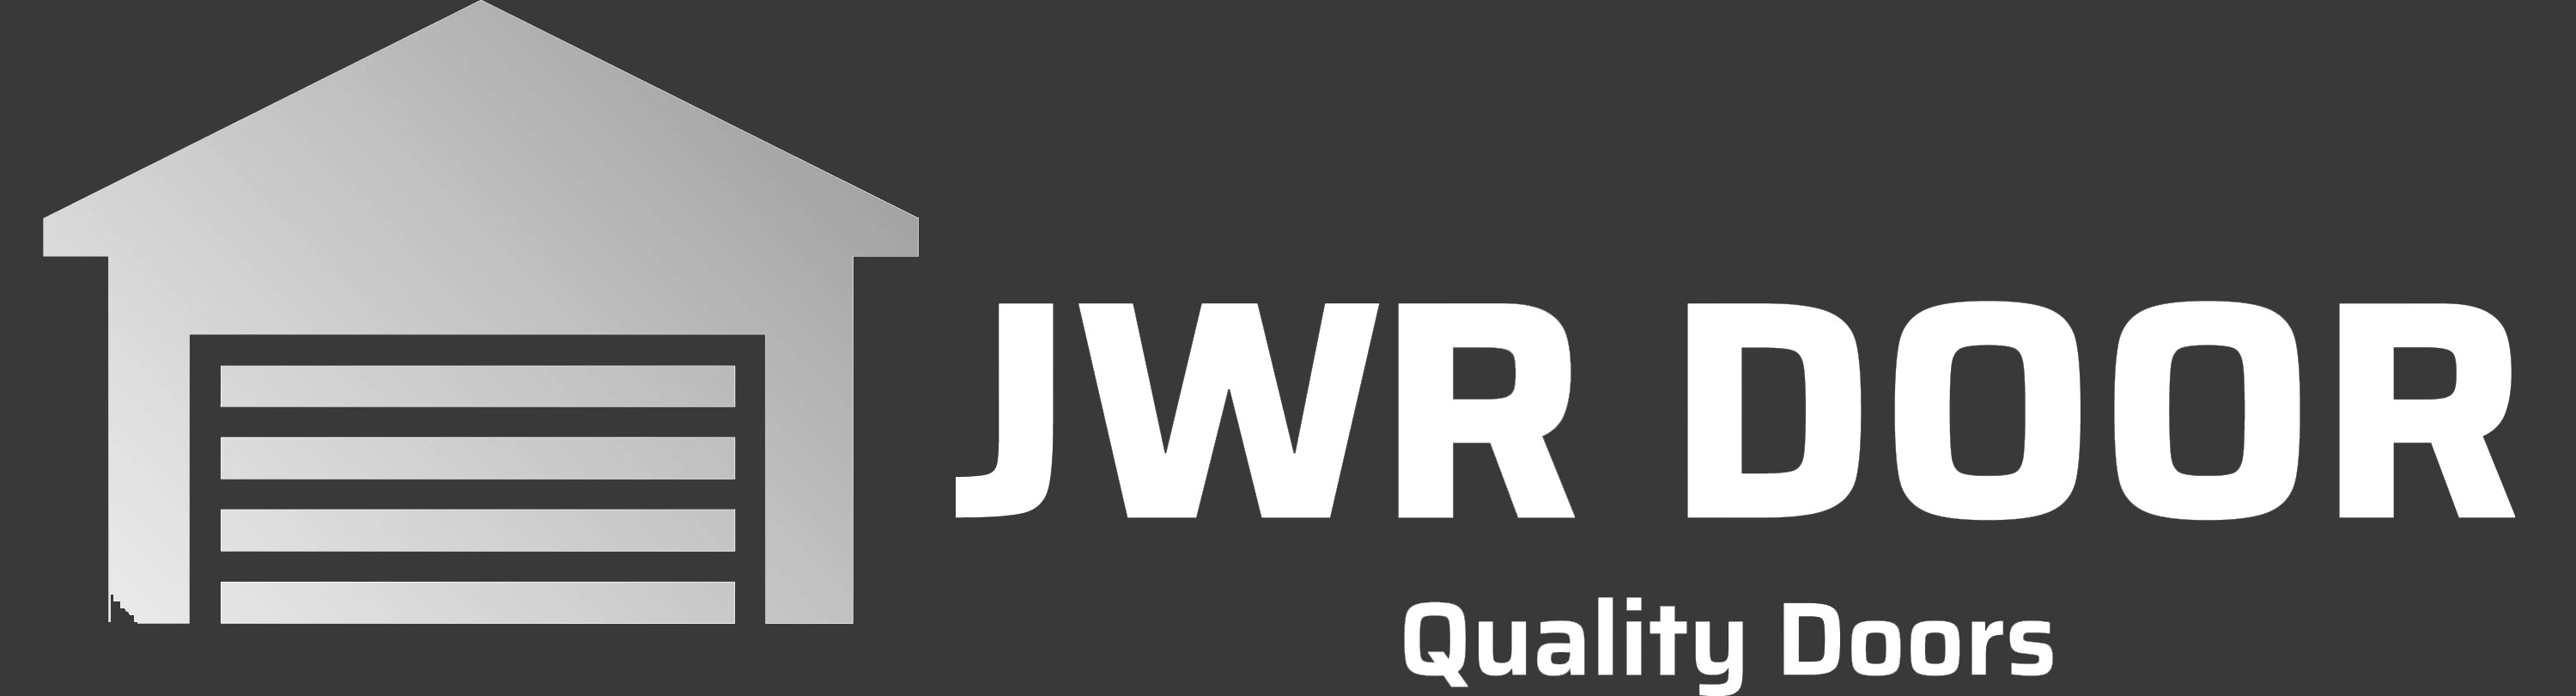 JWR Doors